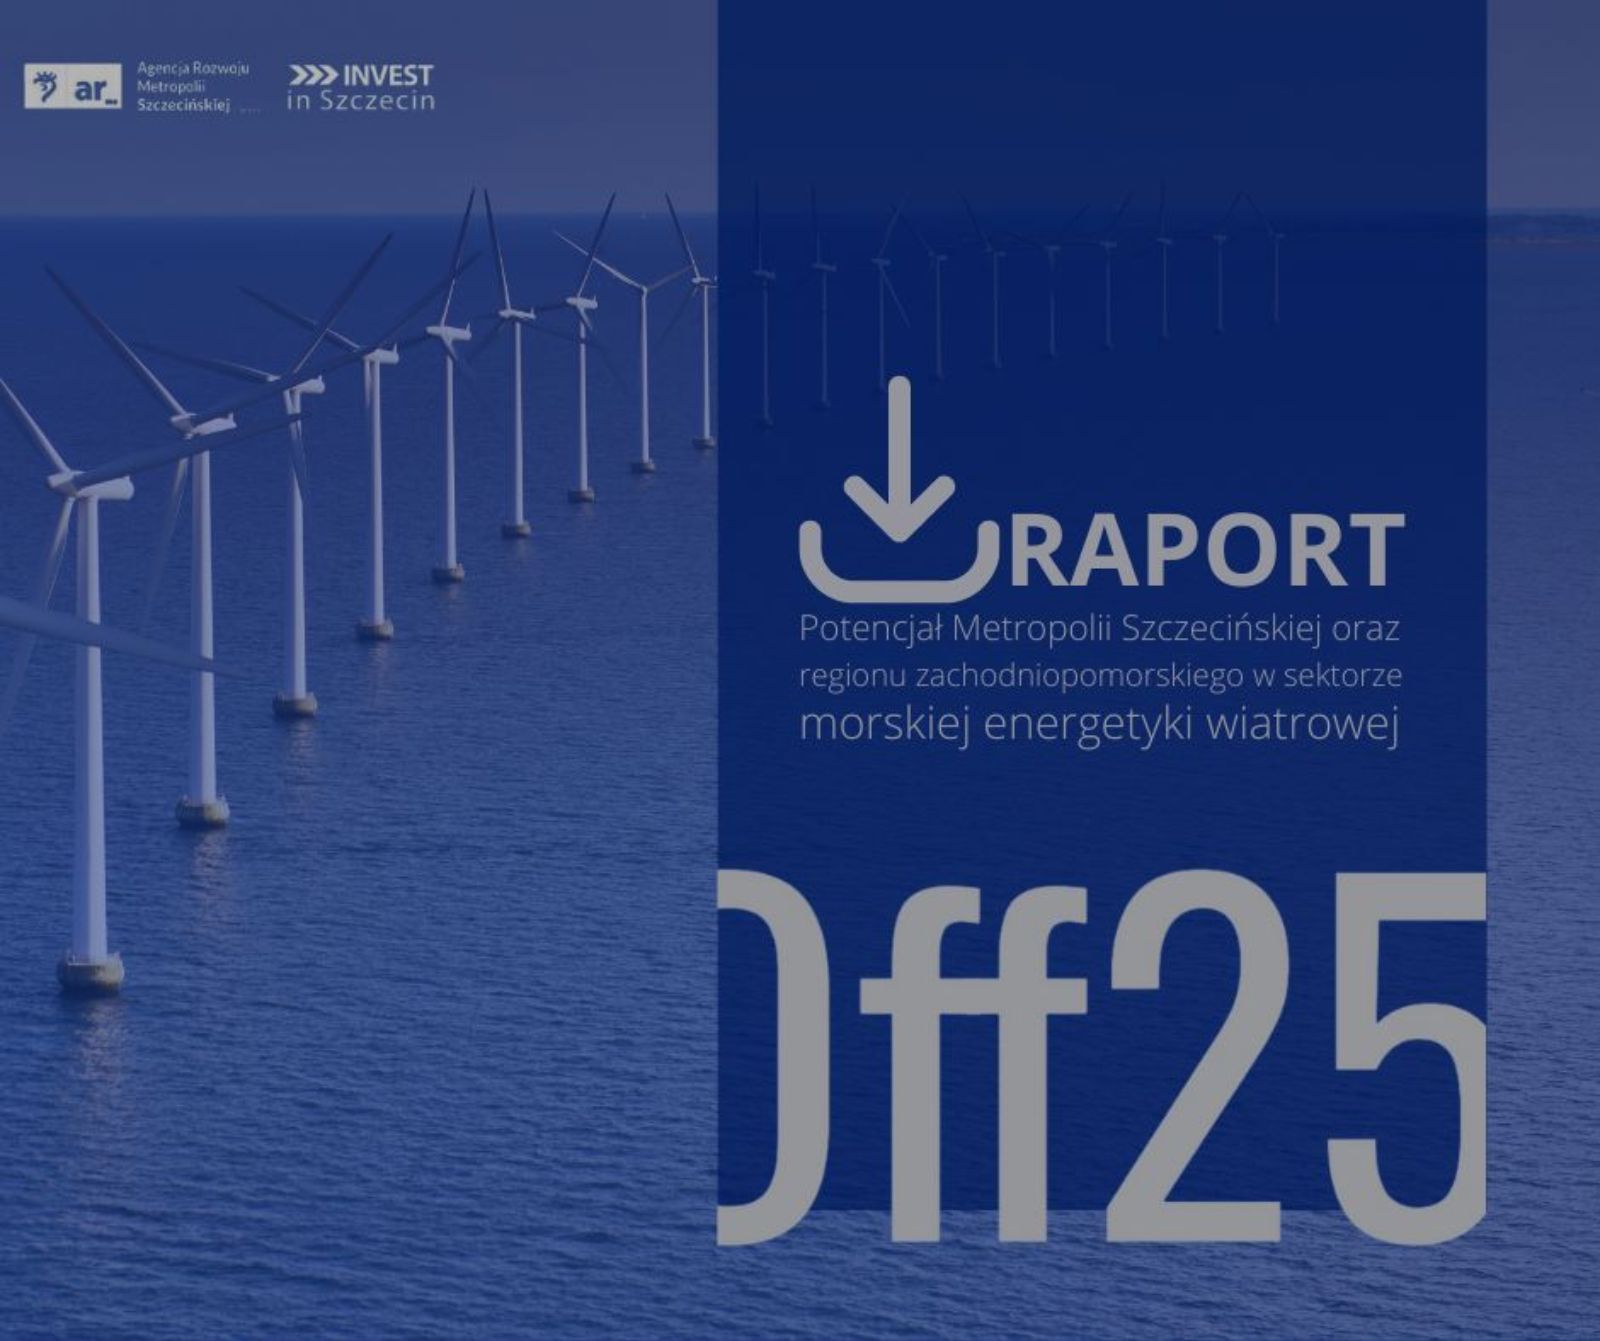 Zielona energia dla naszego regionu - Szczecin_Offshore 2025 - Raport